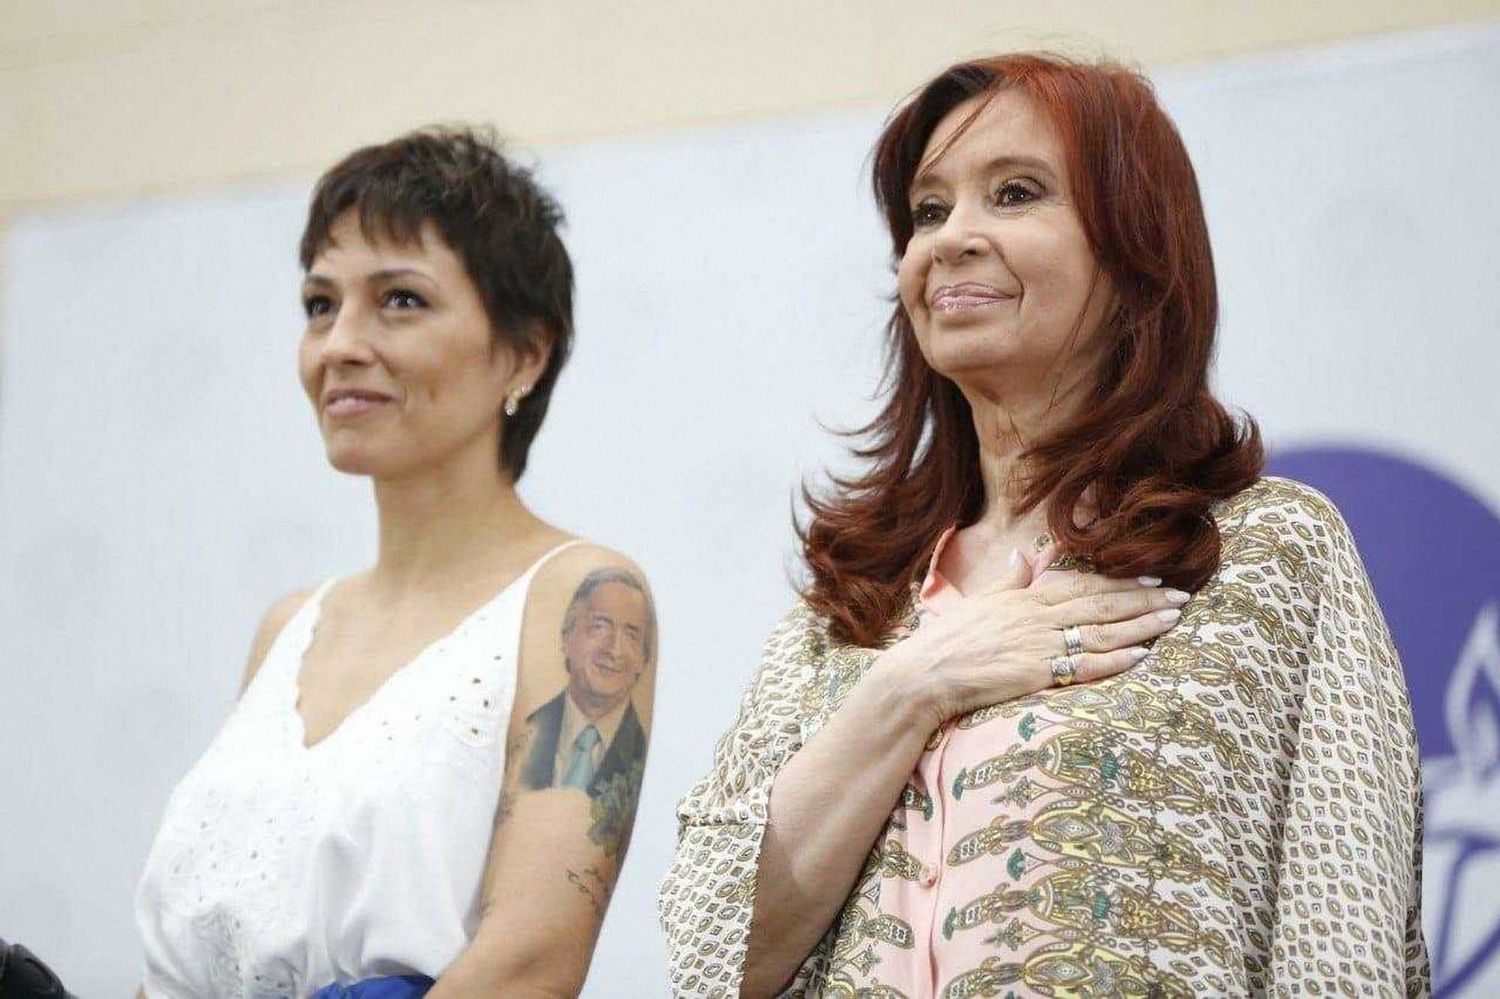 Desde Quilmes, Mayra Mendoza se sumó al operativo clamor: "El futuro de la Argentina es con Cristina Kirchner"